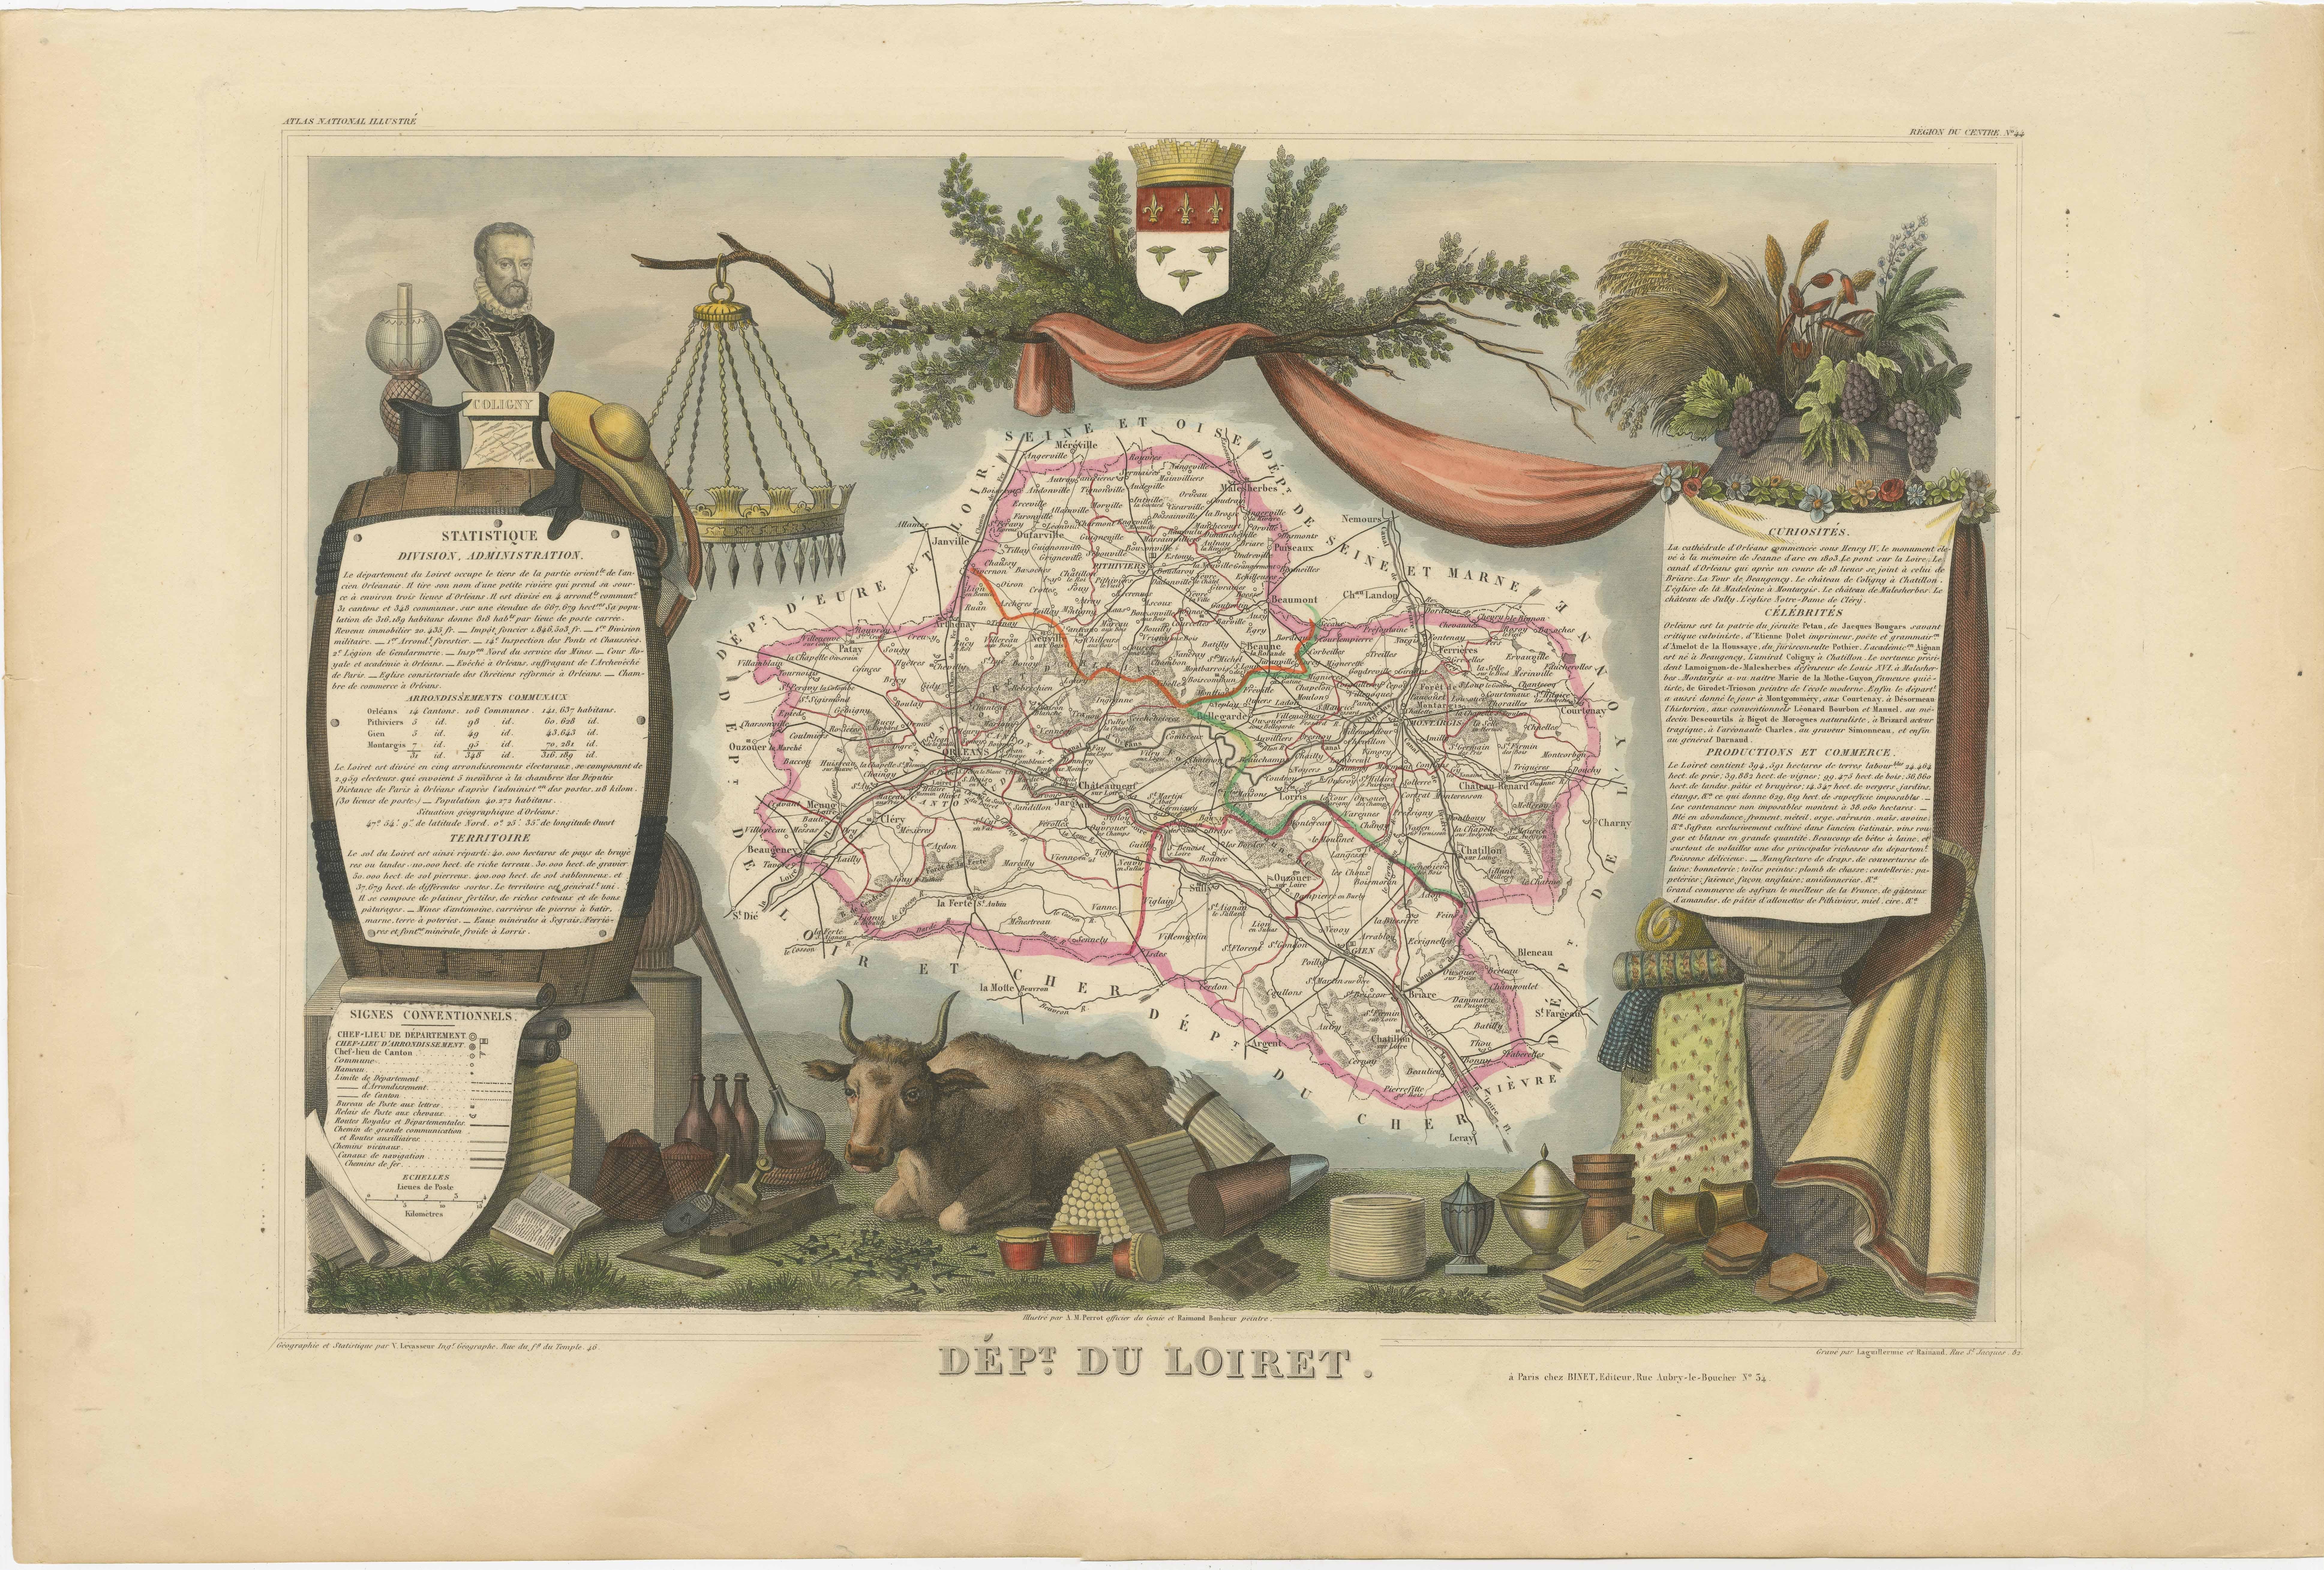 Antike Karte mit dem Titel 'Dépt. du Loiret'. Karte des französischen Departements Loiret, Frankreich. Das Loiret, das die Stadt Orleans umgibt, gilt als das Herz Frankreichs und ist von der Unesco als Weltkulturerbe anerkannt. Dieser Teil